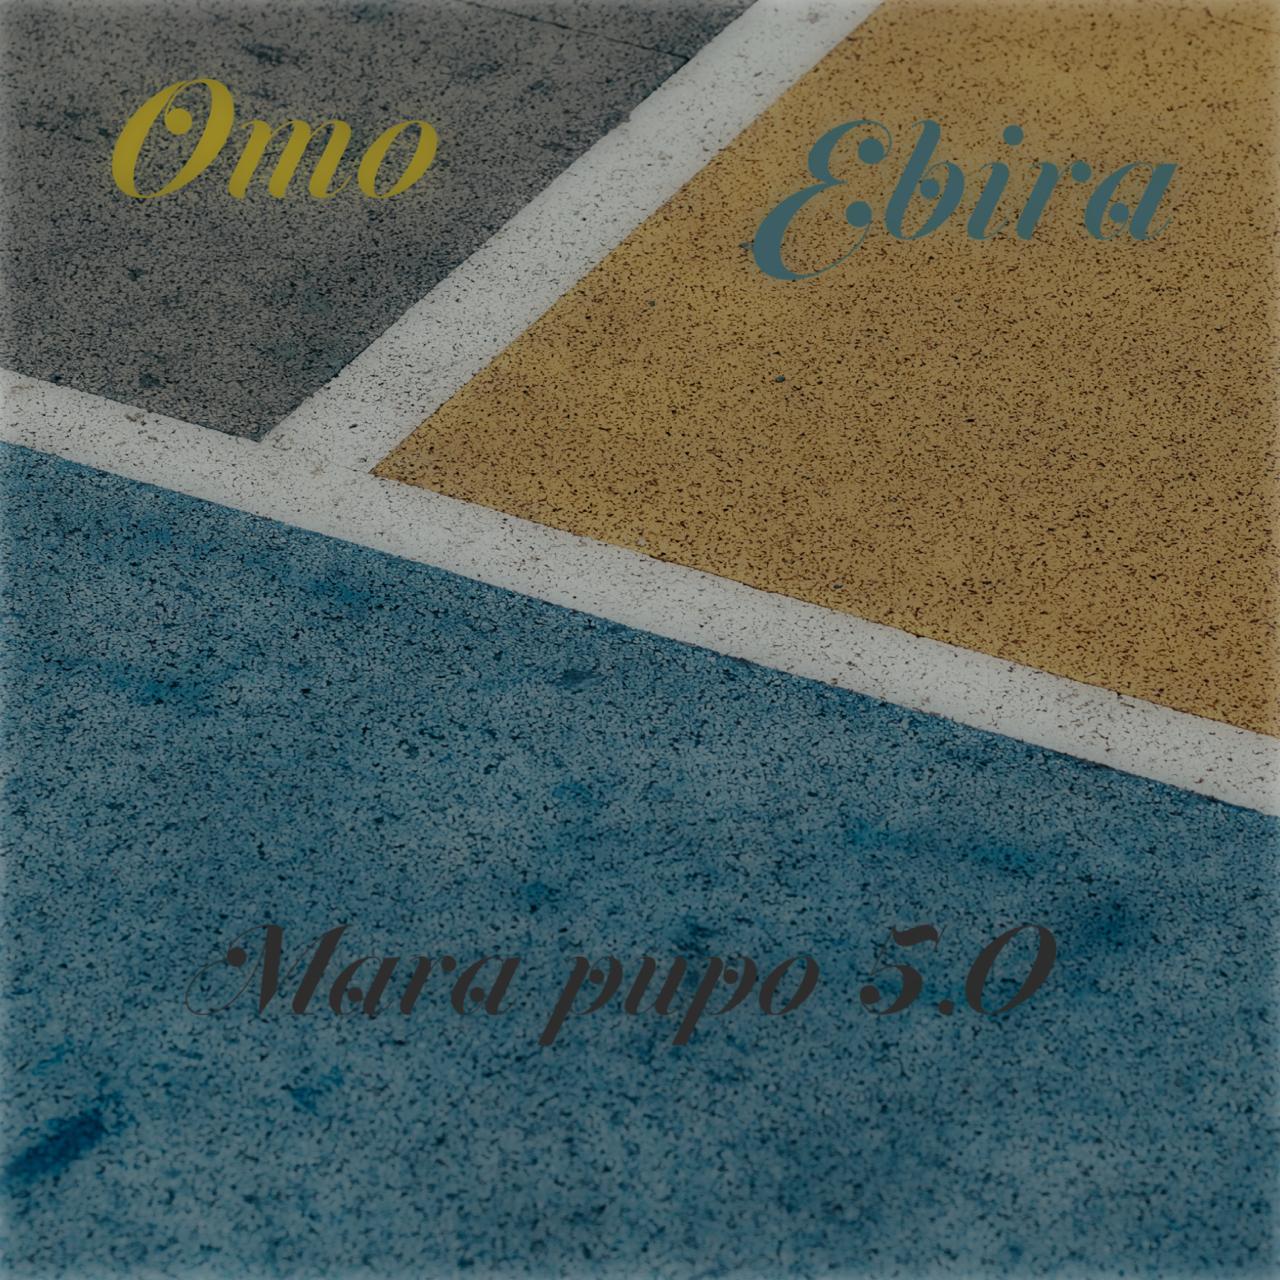 Omo Ebira DJ TTrend — Mara Pupo 5.0 Beat